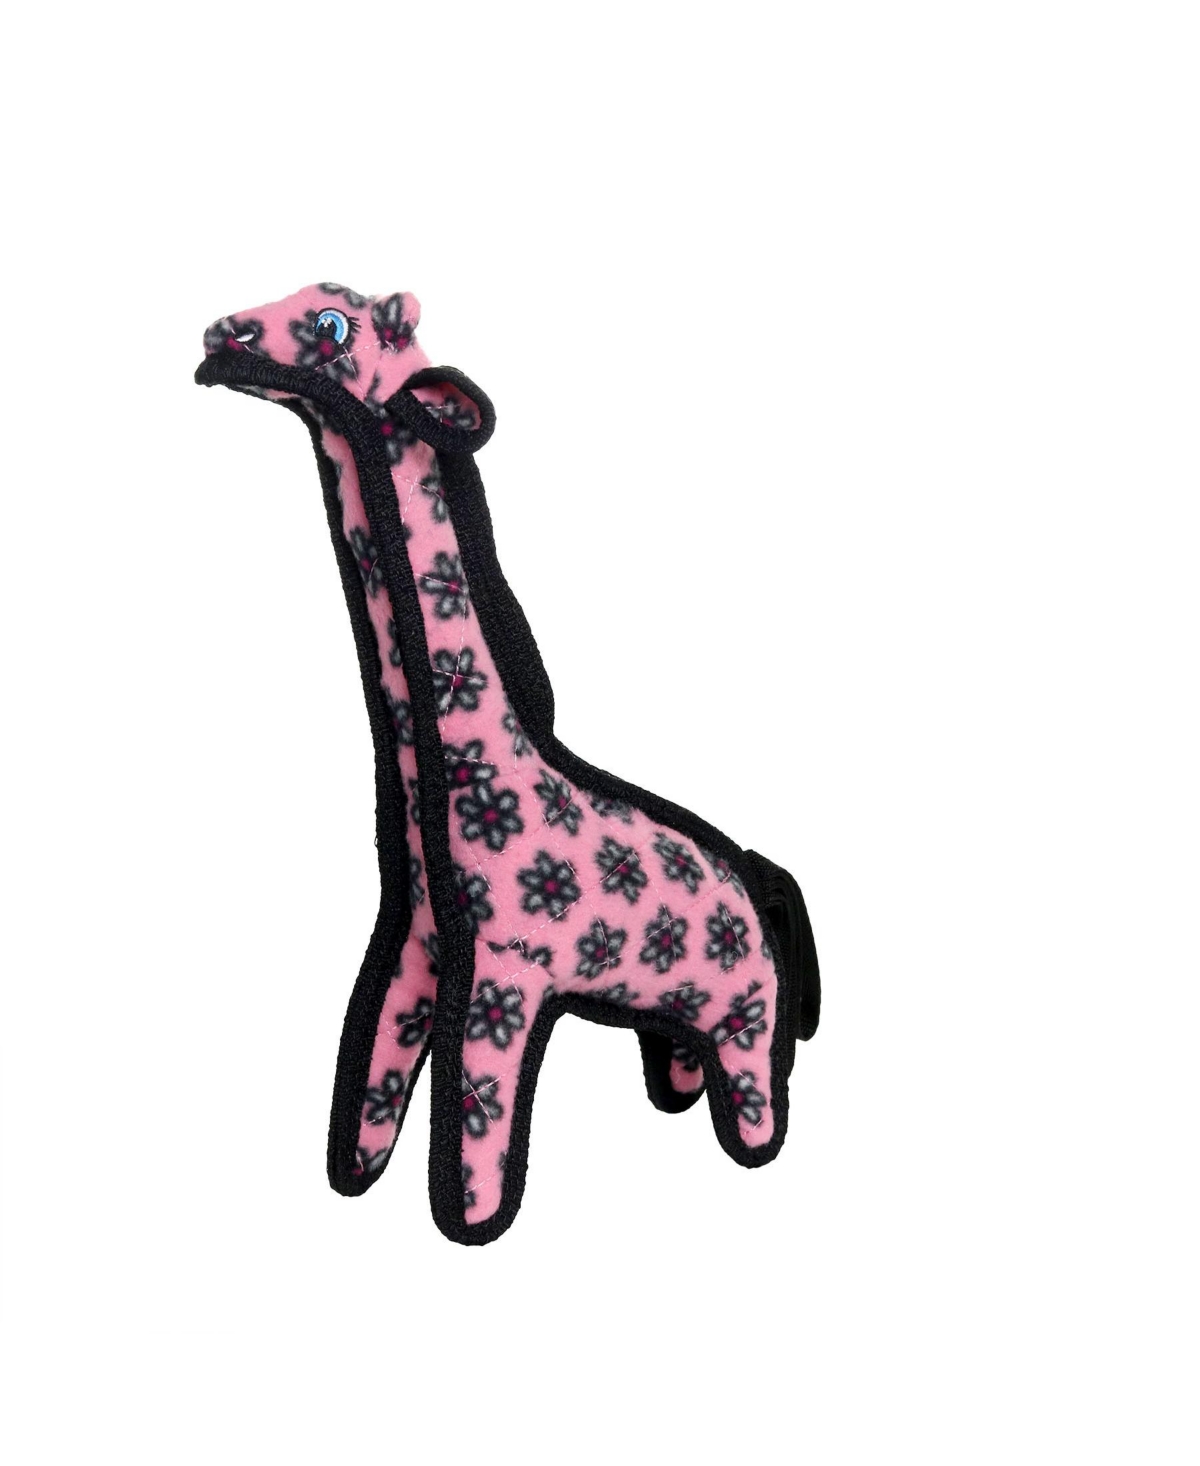 Jr Zoo Giraffe Pink, Dog Toy - Pink